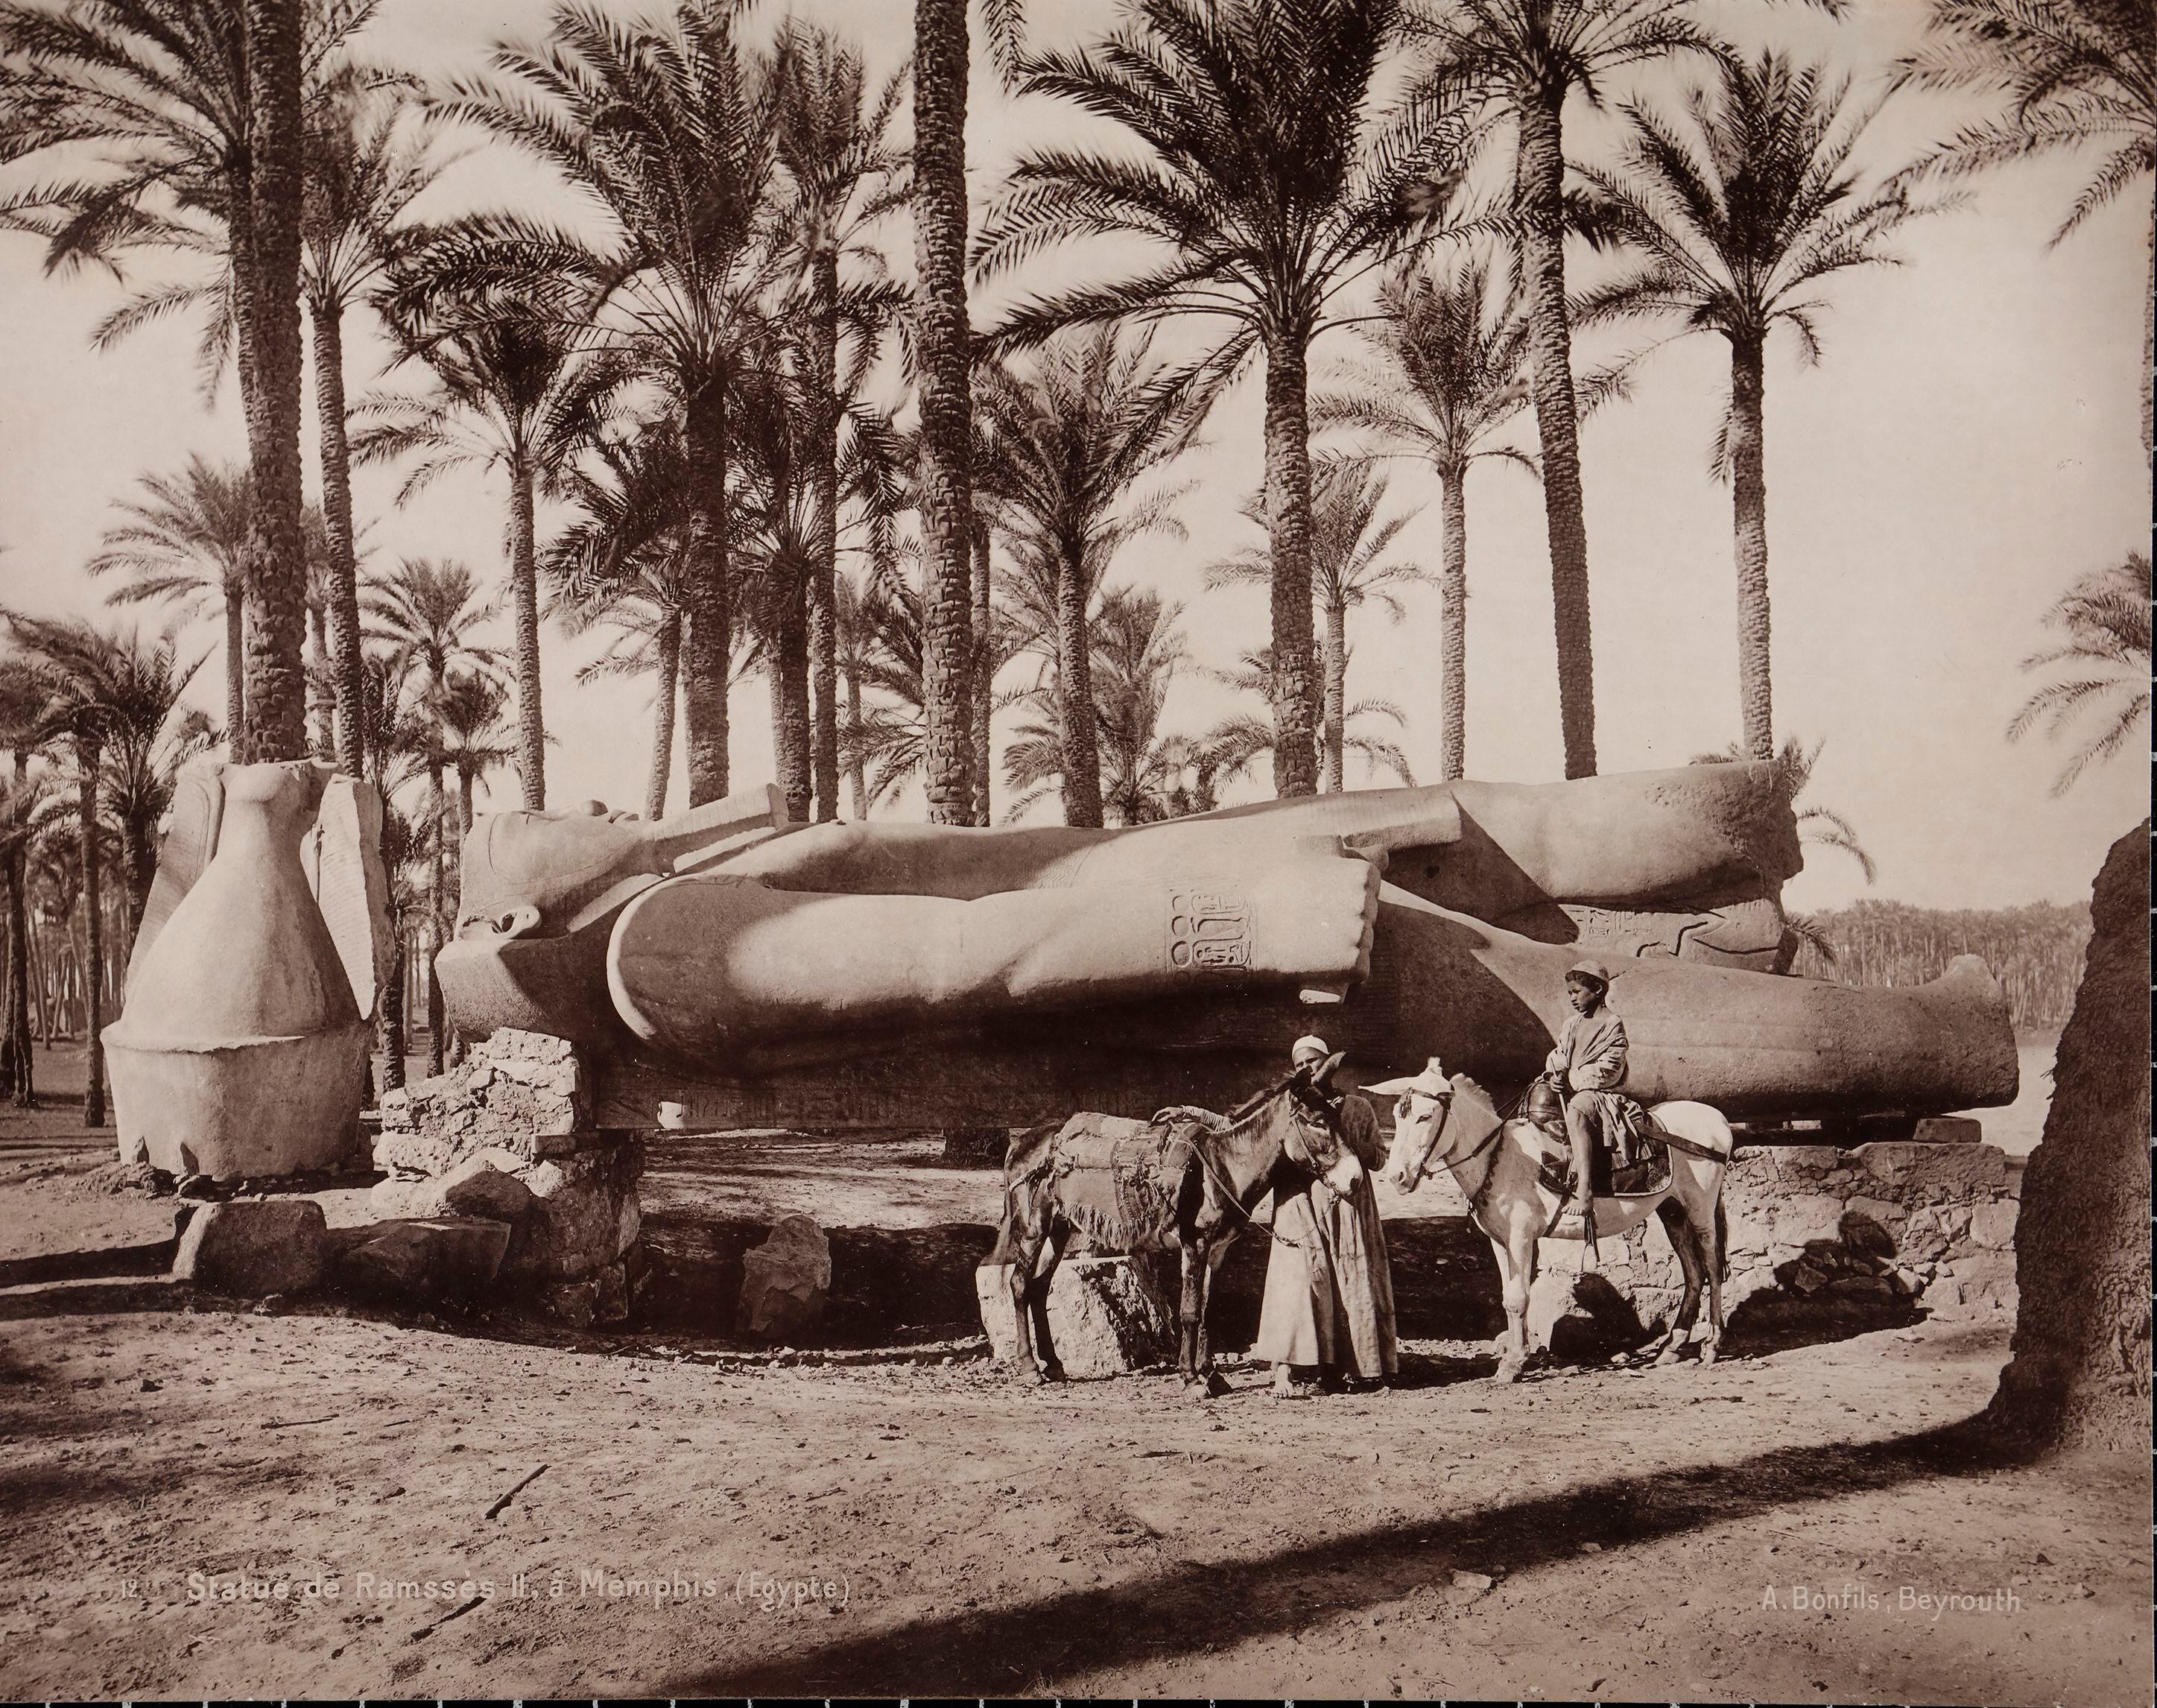 Imagen de la estatua del faraón Ramsés II en Menfis (Egipto), tomada hacia 1870 por Félix Bonfils, fotógrafo francés asentado en Beirut.